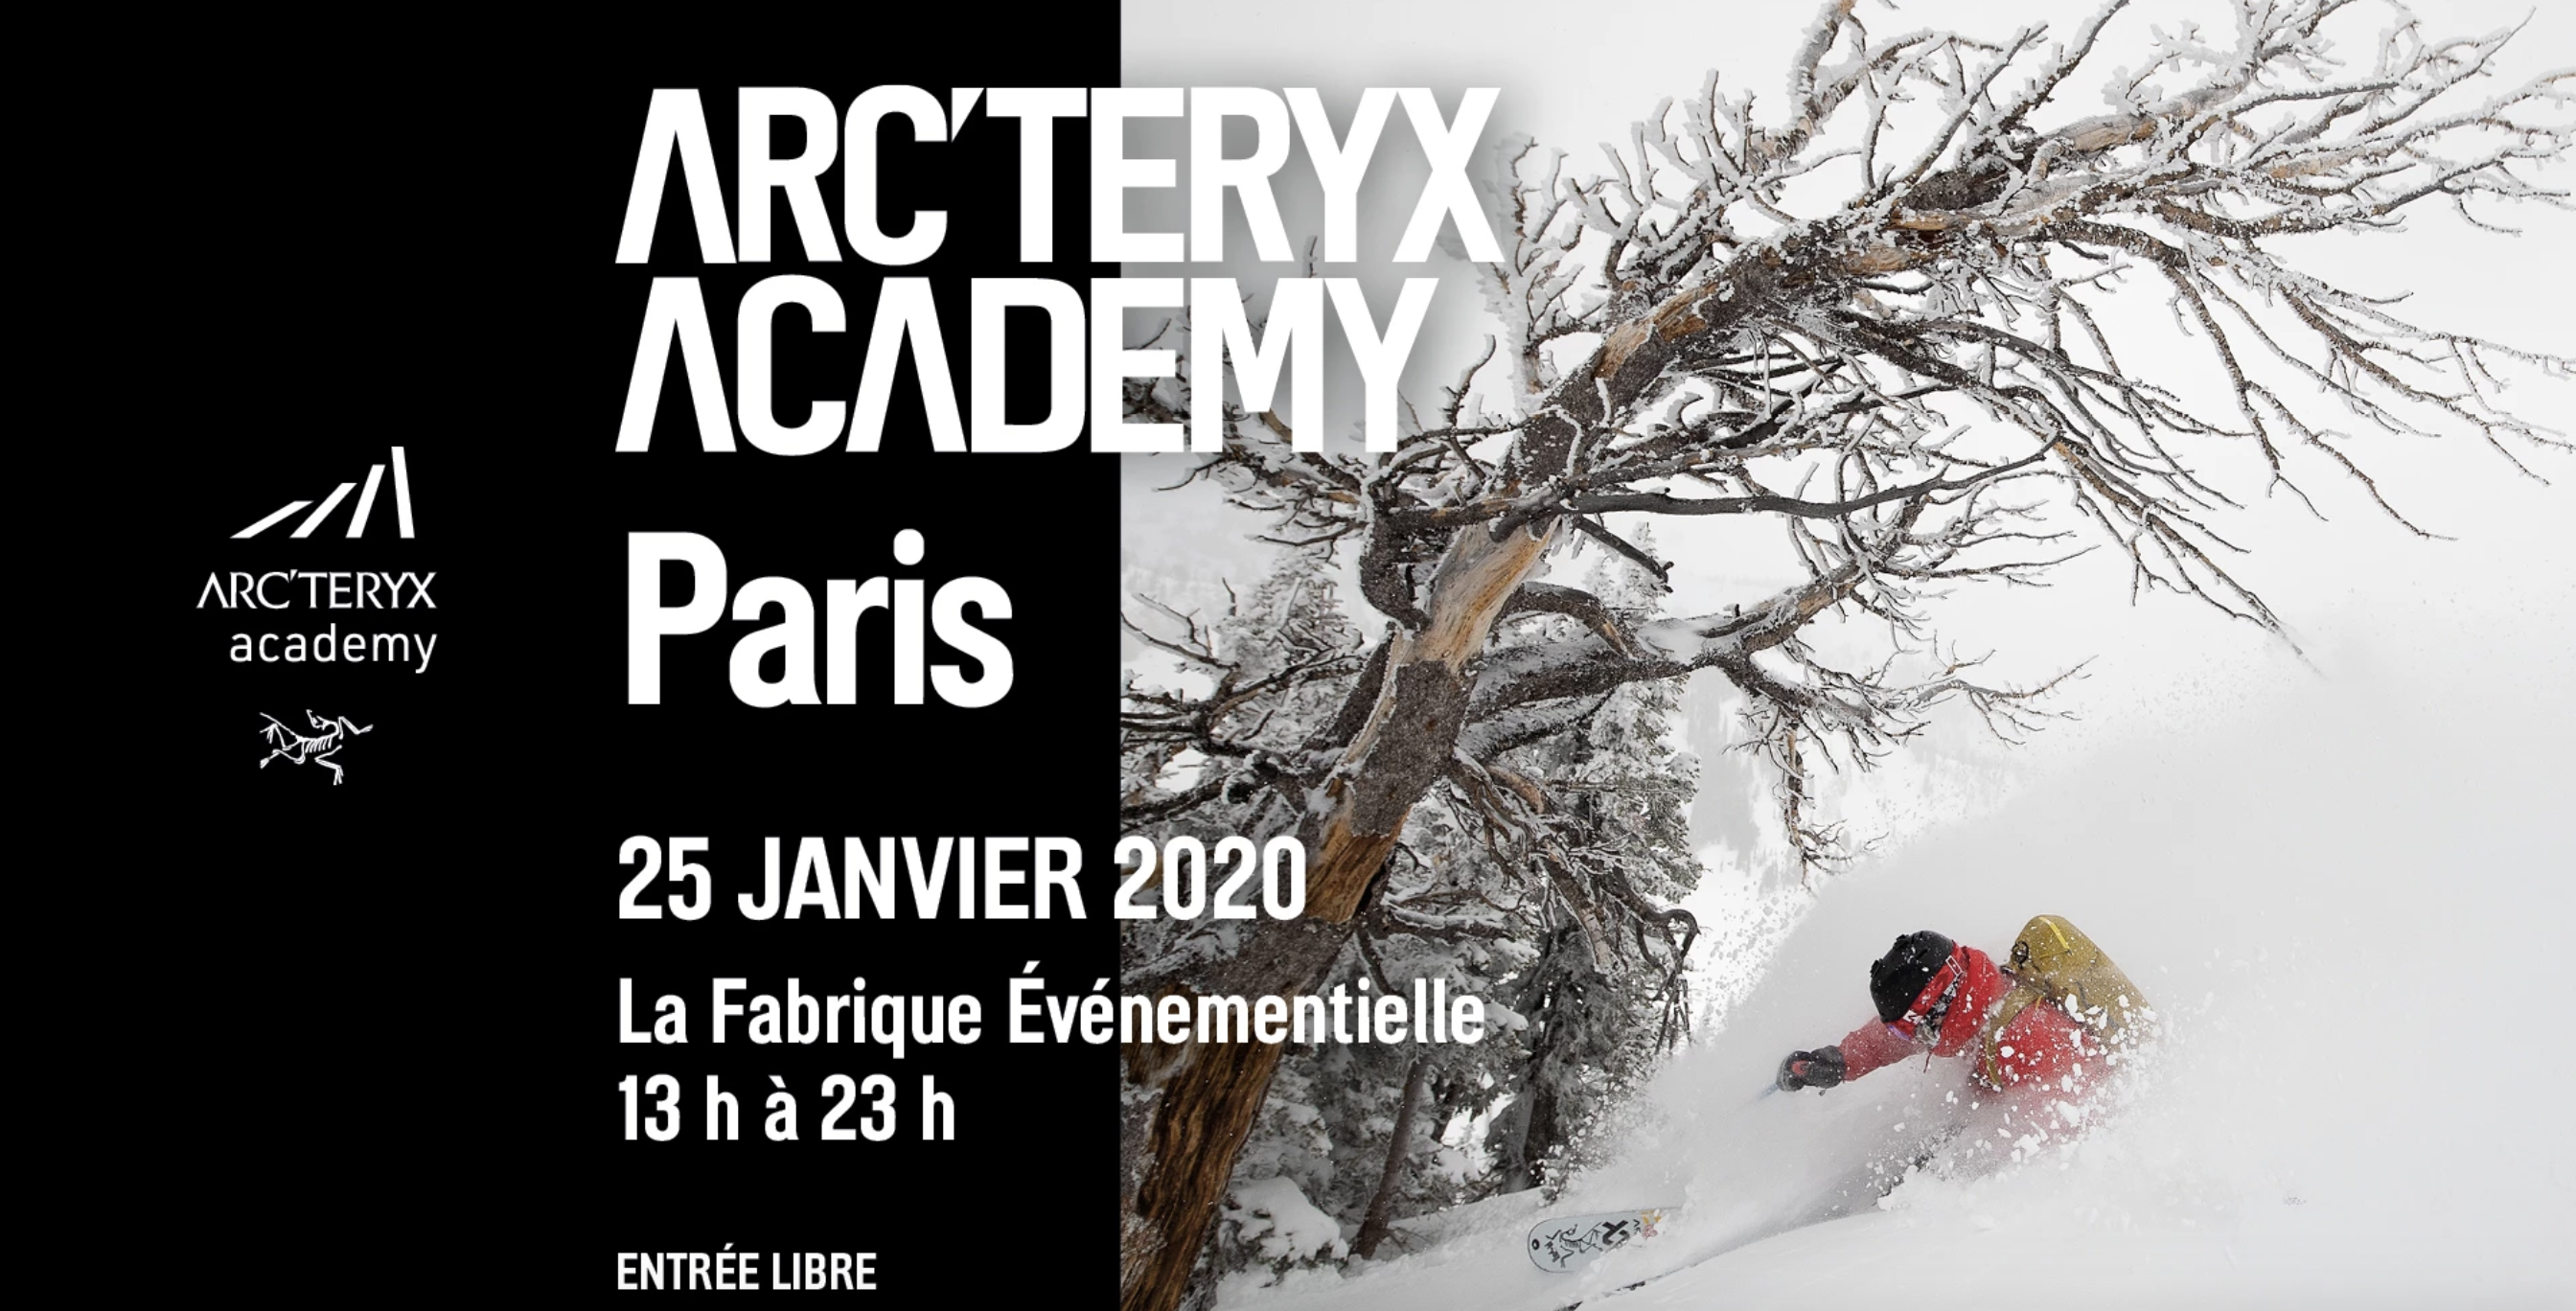 L'Arc'teryx Academy ouvre demain à Paris